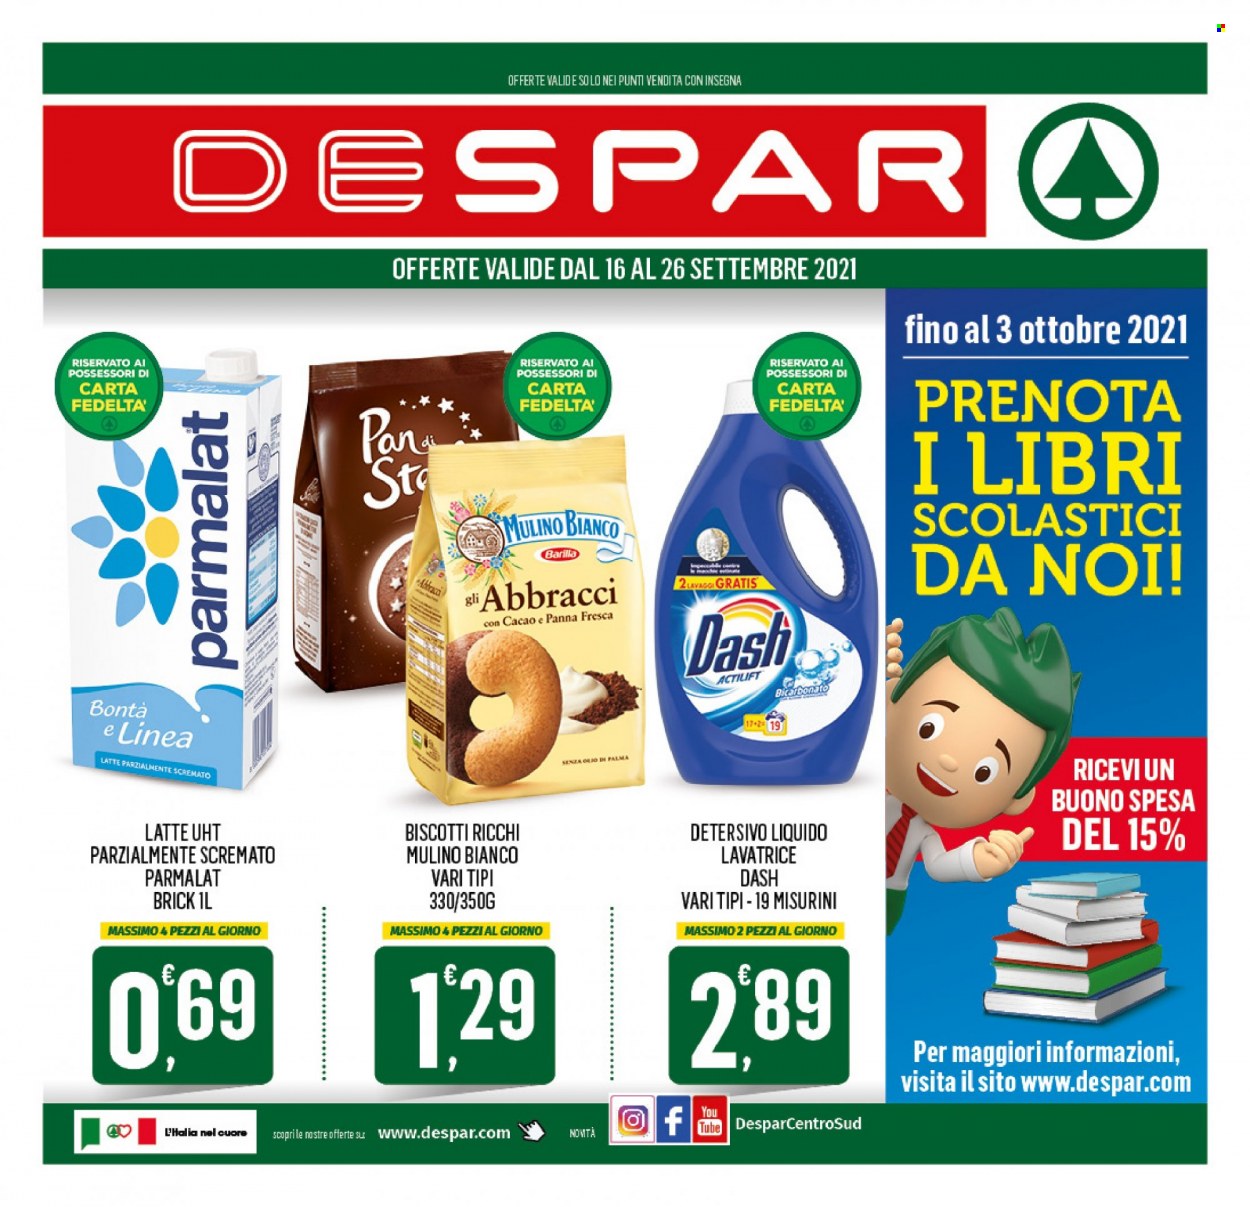 thumbnail - Volantino Despar - 16/9/2021 - 26/9/2021 - Prodotti in offerta - Mulino Bianco, Parmalat, latte, biscotti, Barilla, Dash. Pagina 1.